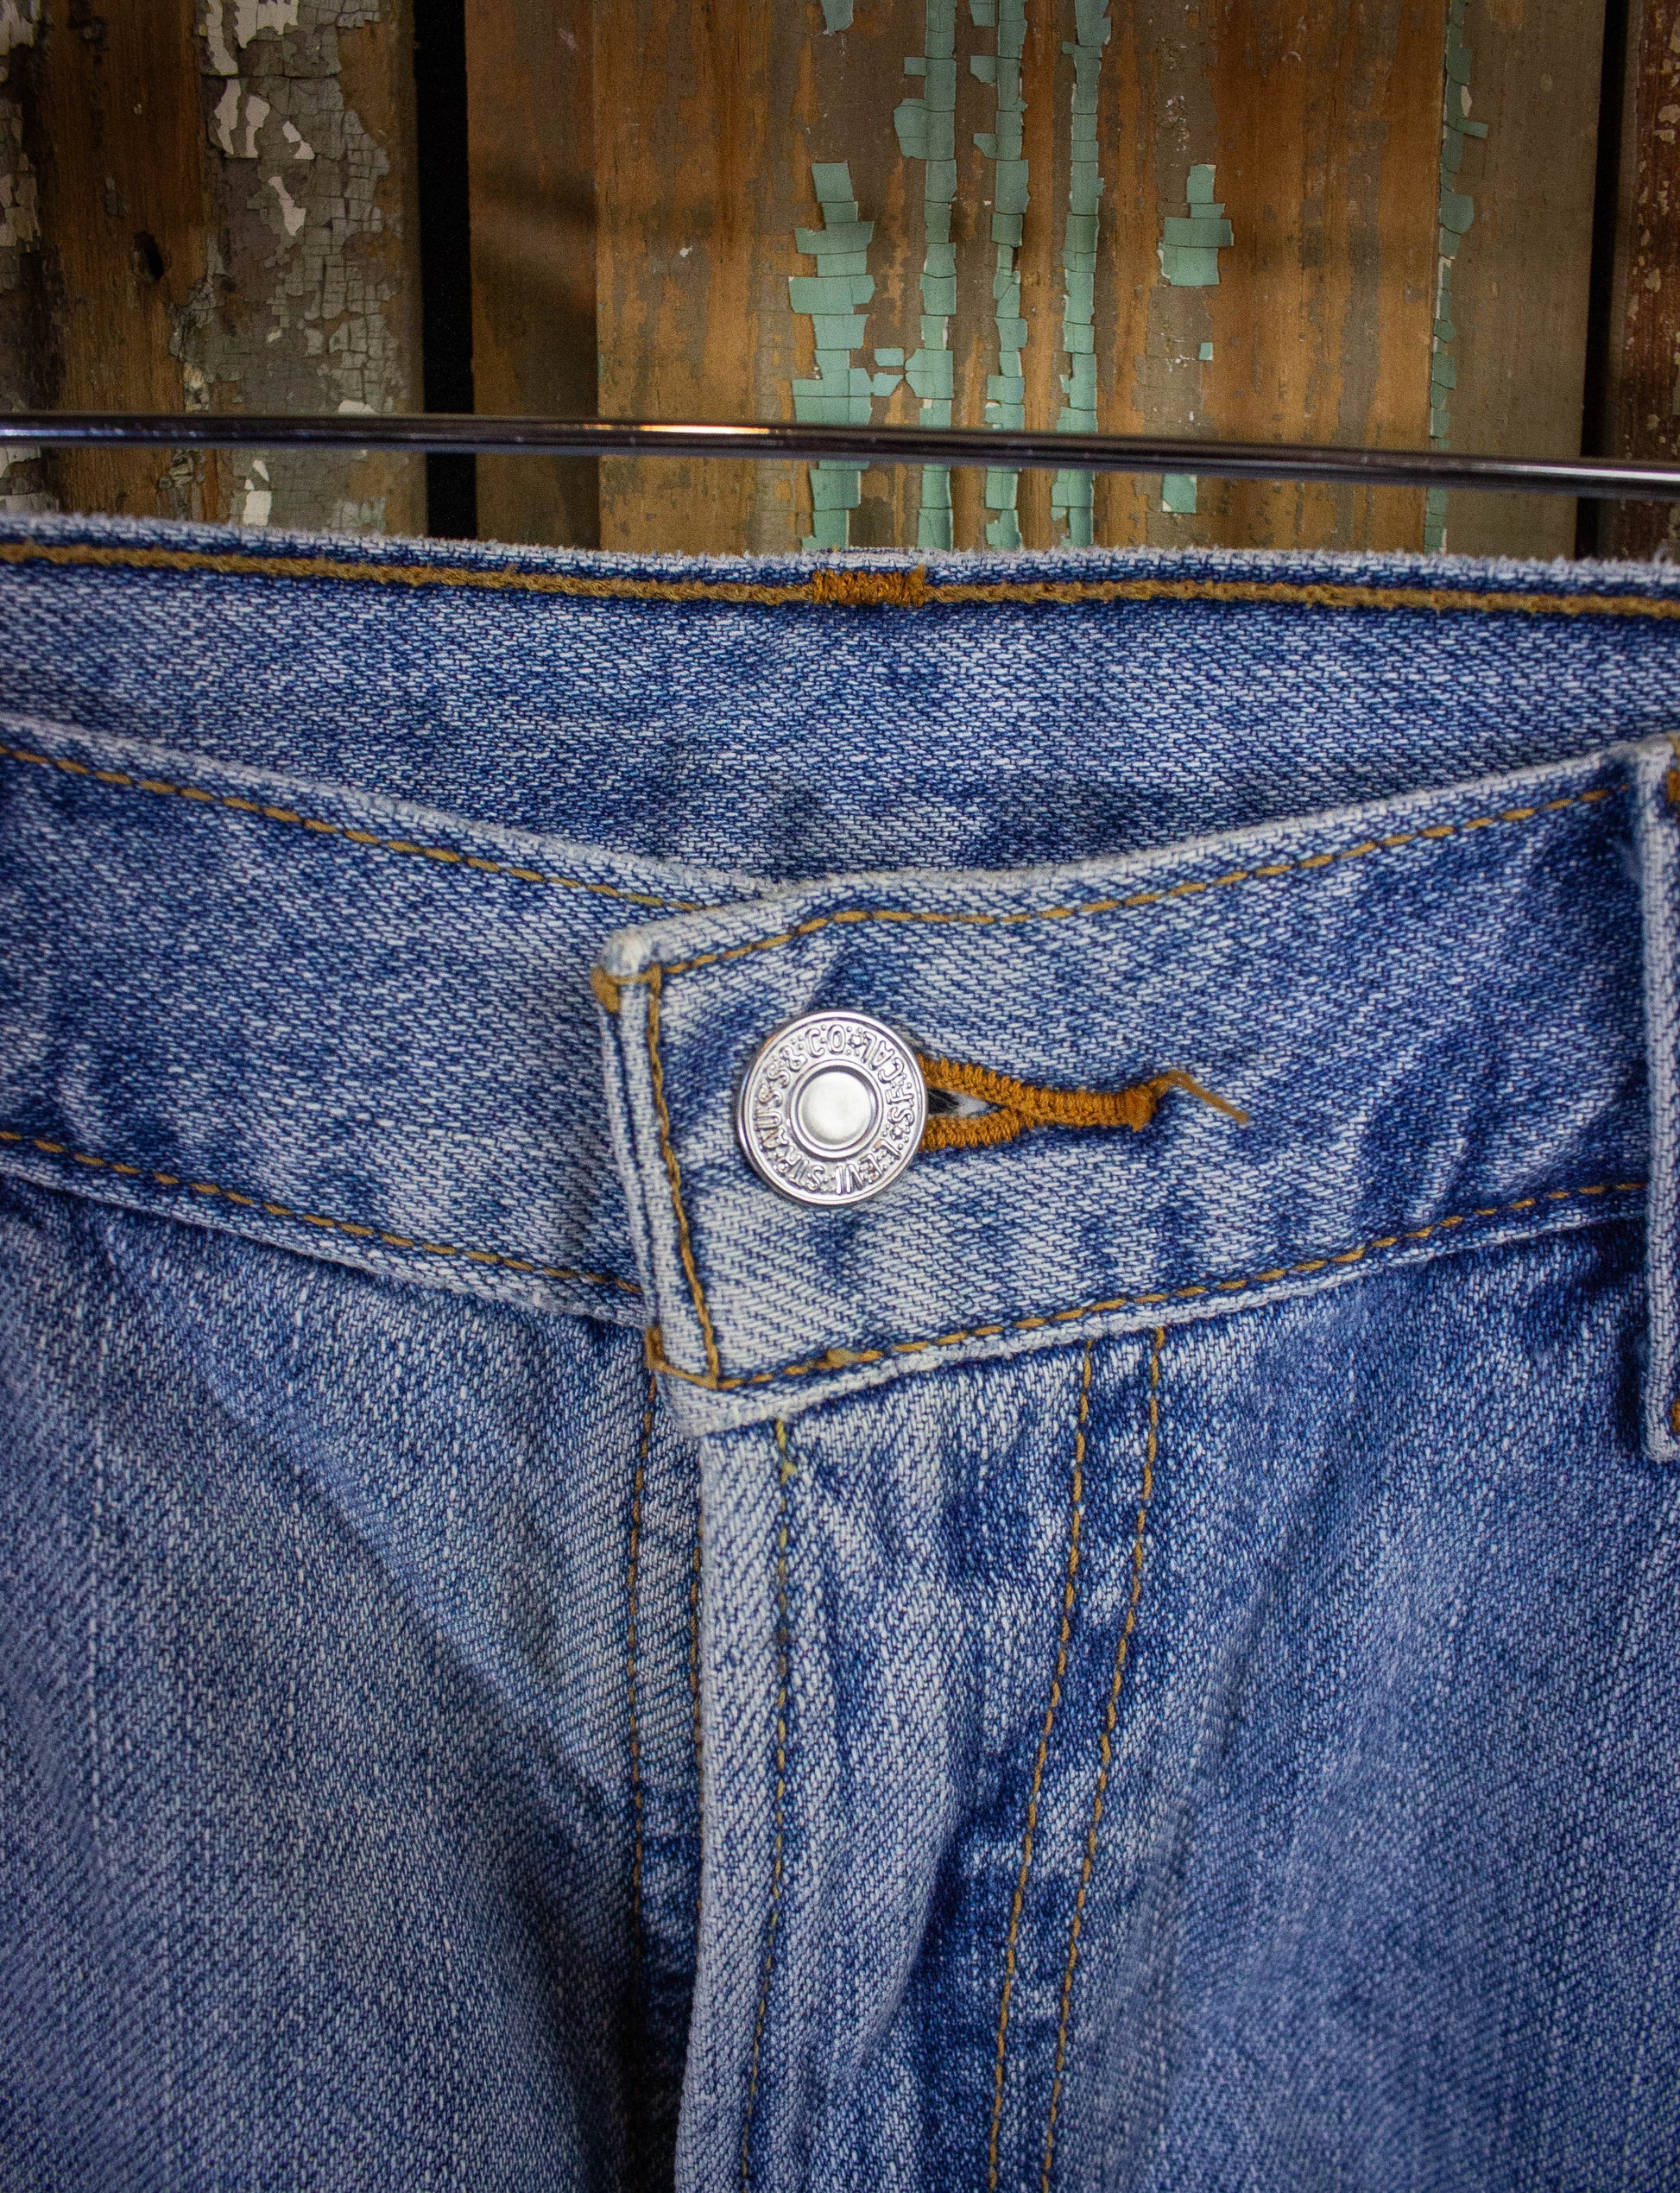 Vintage Levi's 550 Hemmed Denim Shorts Light Wash 36w